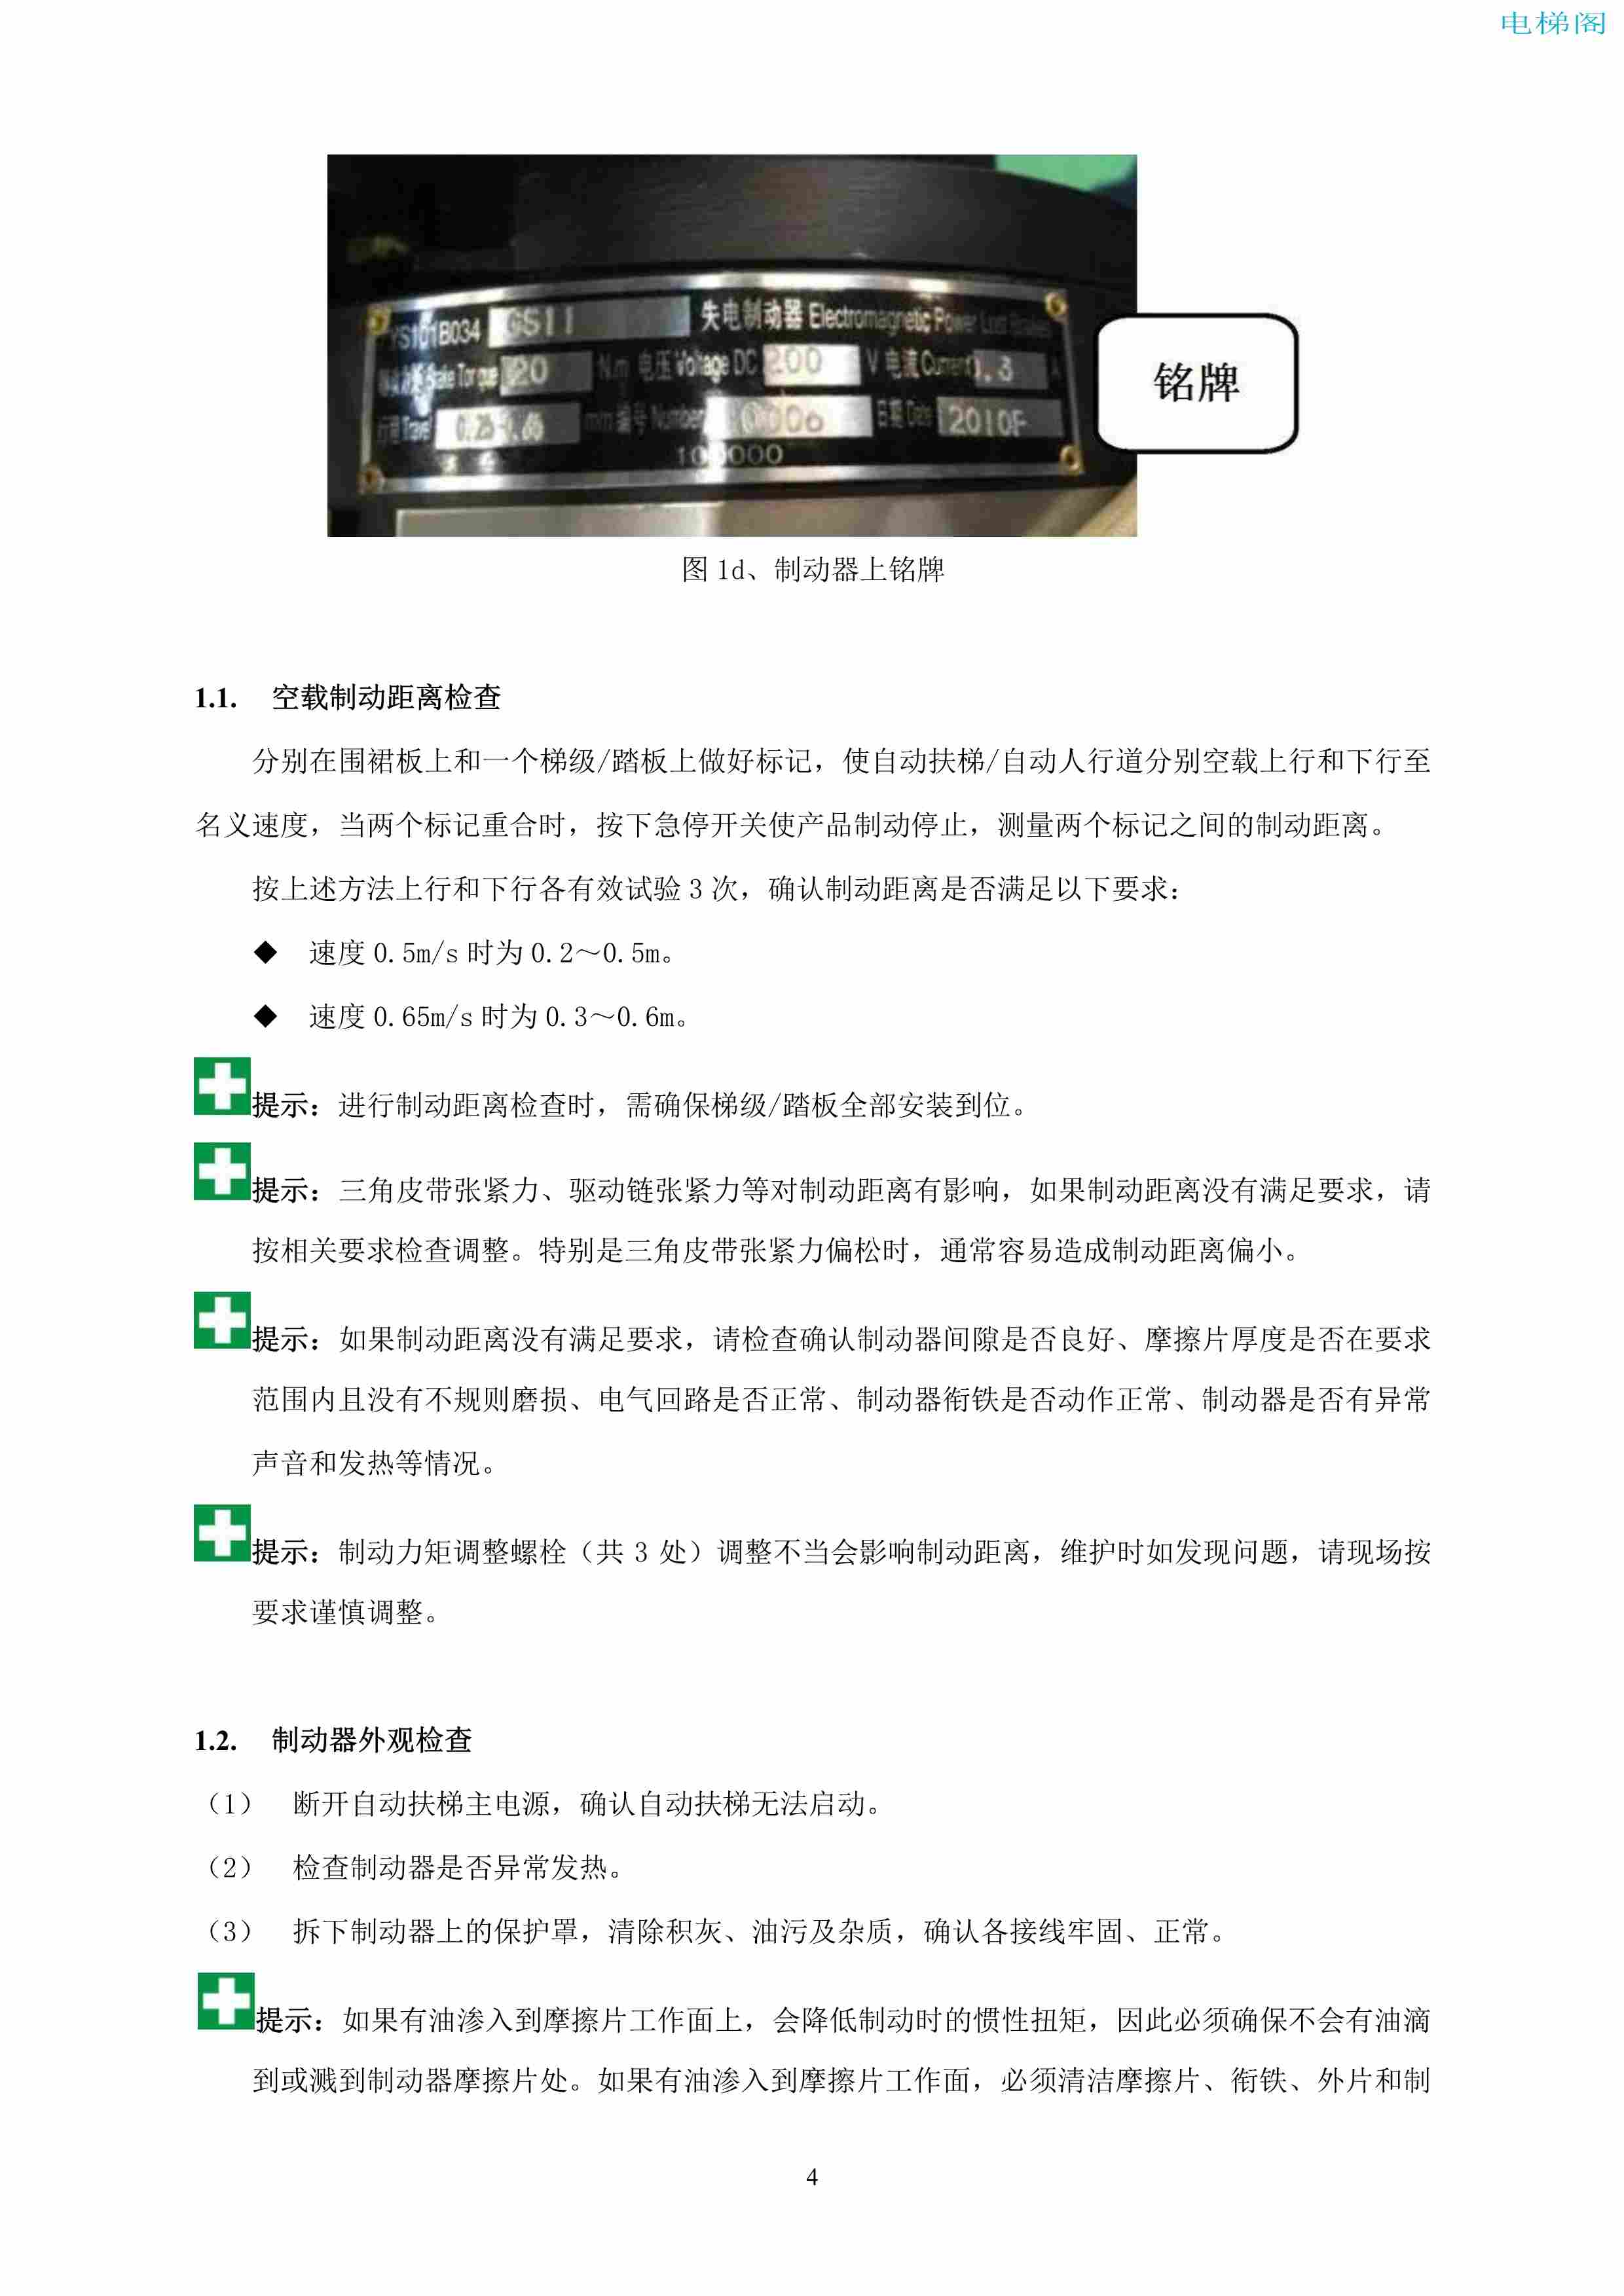 上海三菱电梯有限公司自动扶梯制动器维护作业要领汇编_5.jpg